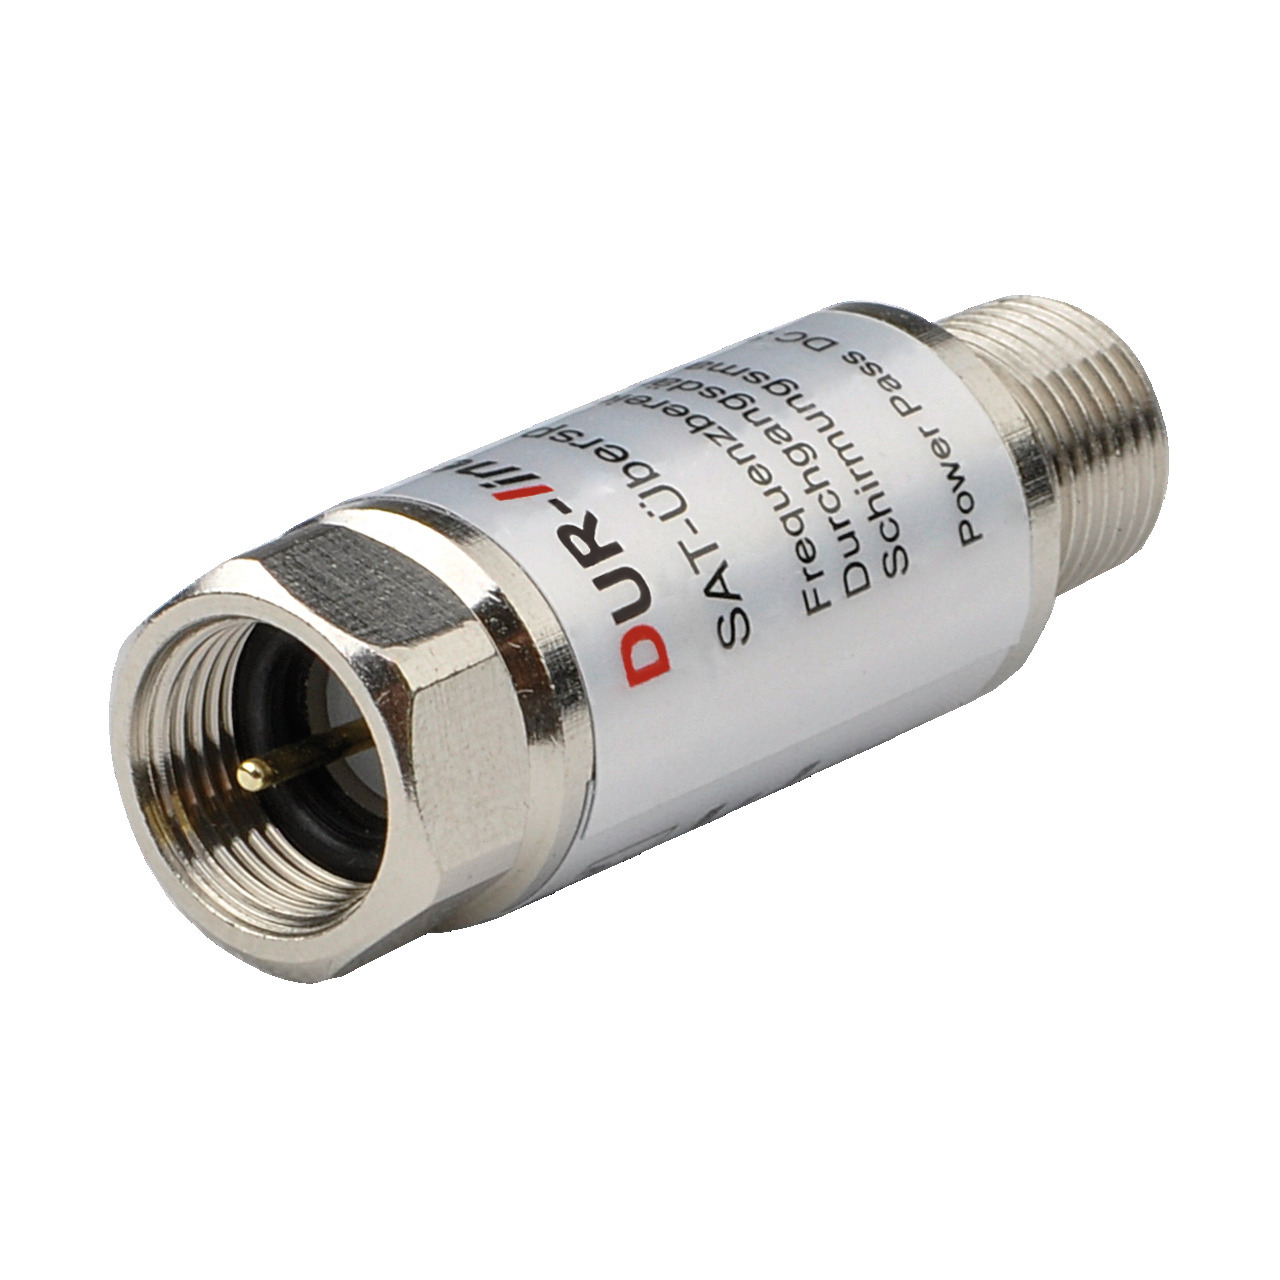 DUR-line Überspannungs-Blitzschutz DLBS 3001- 0-3 dB Durchgangsdämpfung- passend zu Erdungsblöcken unter Multimedia